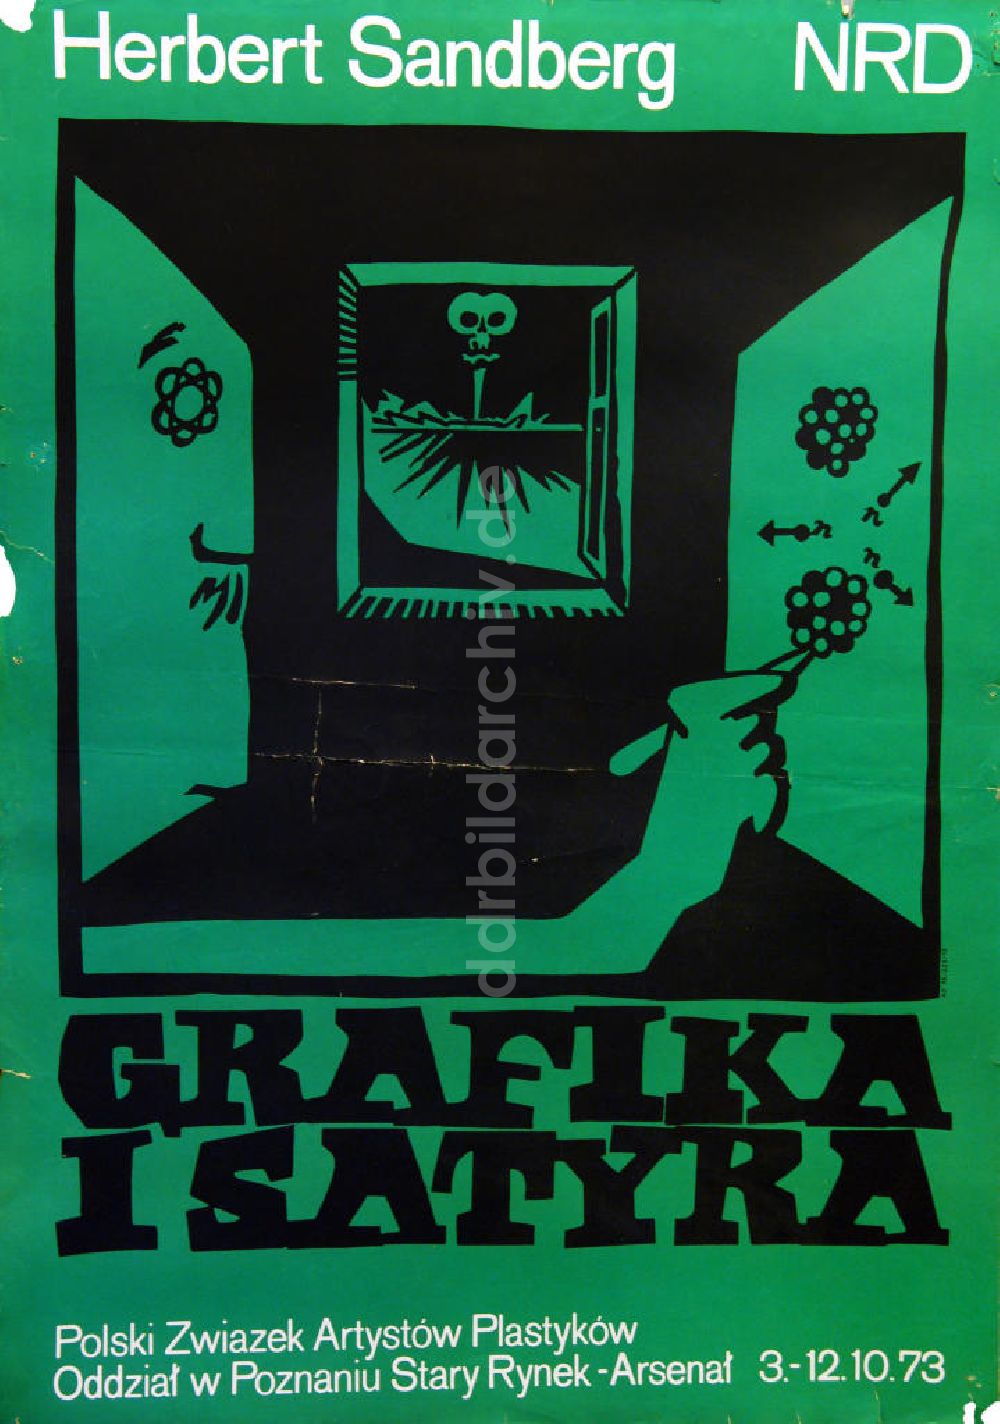 DDR-Bildarchiv: Berlin - Plakat von der Ausstellung Herbert Sandberg NRD, Grafika i Satyra aus dem Jahr 1973